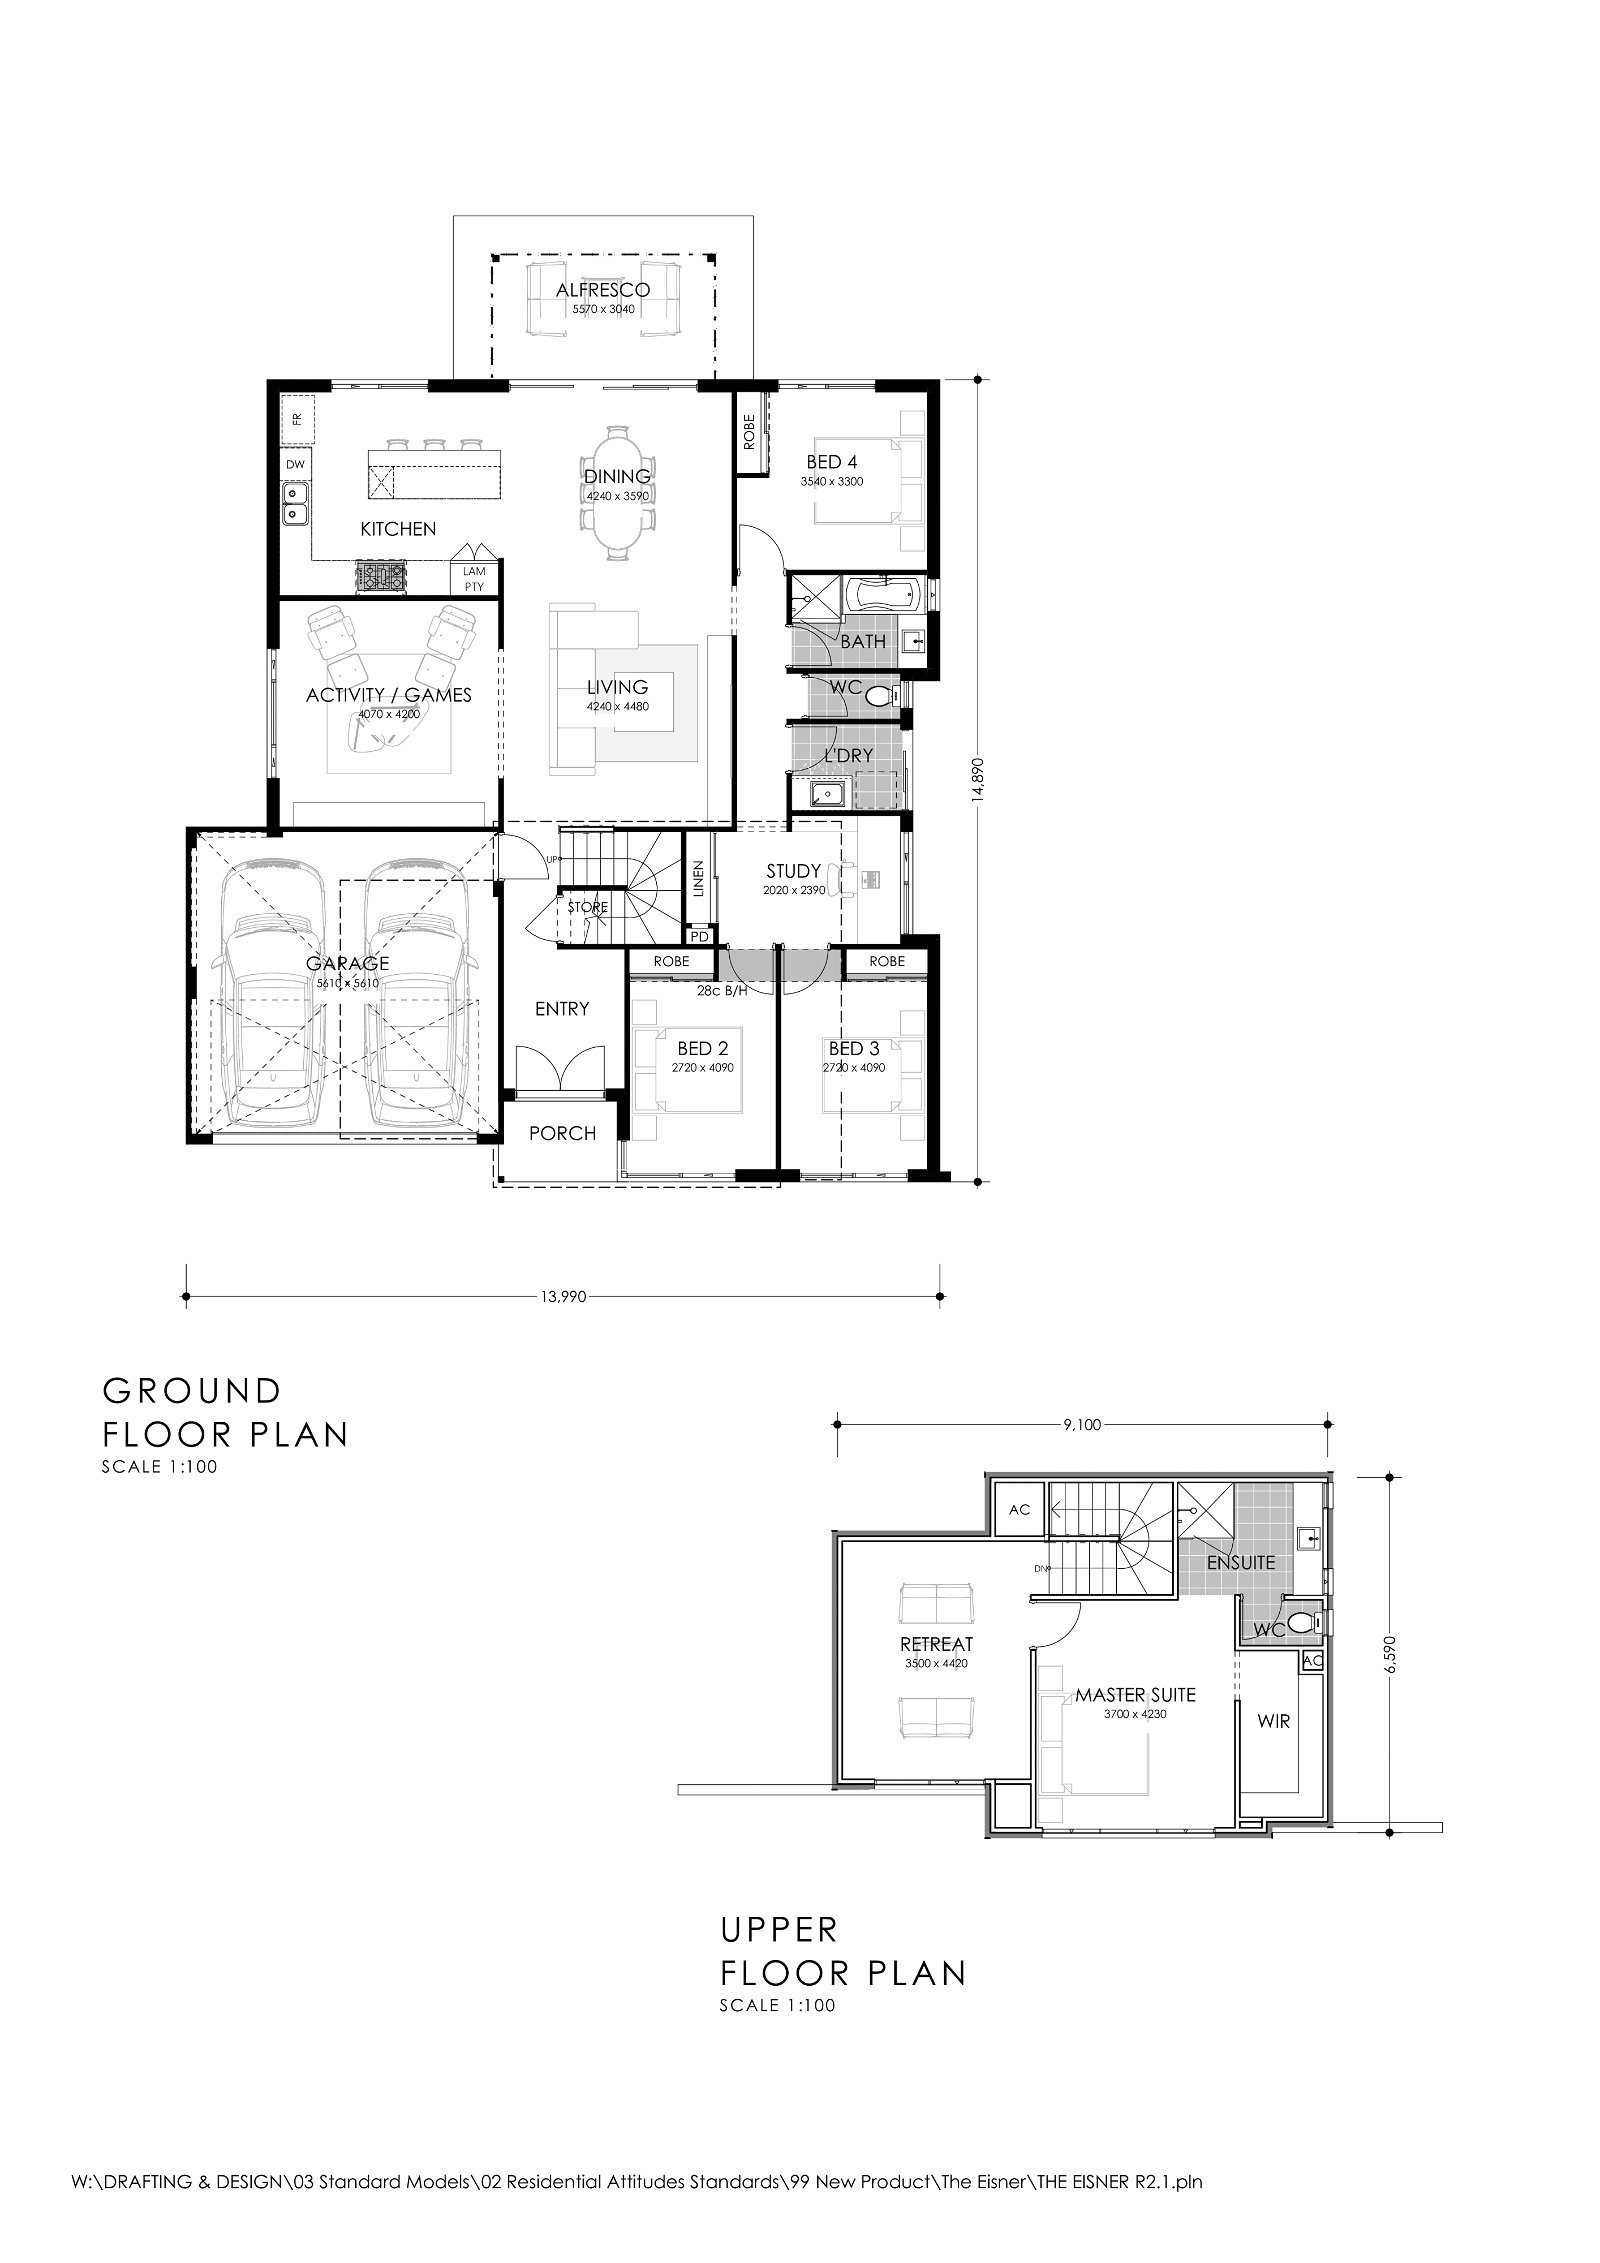 Residential Attitudes - Modern Family - Floorplan - Modern Family Brochure Plan